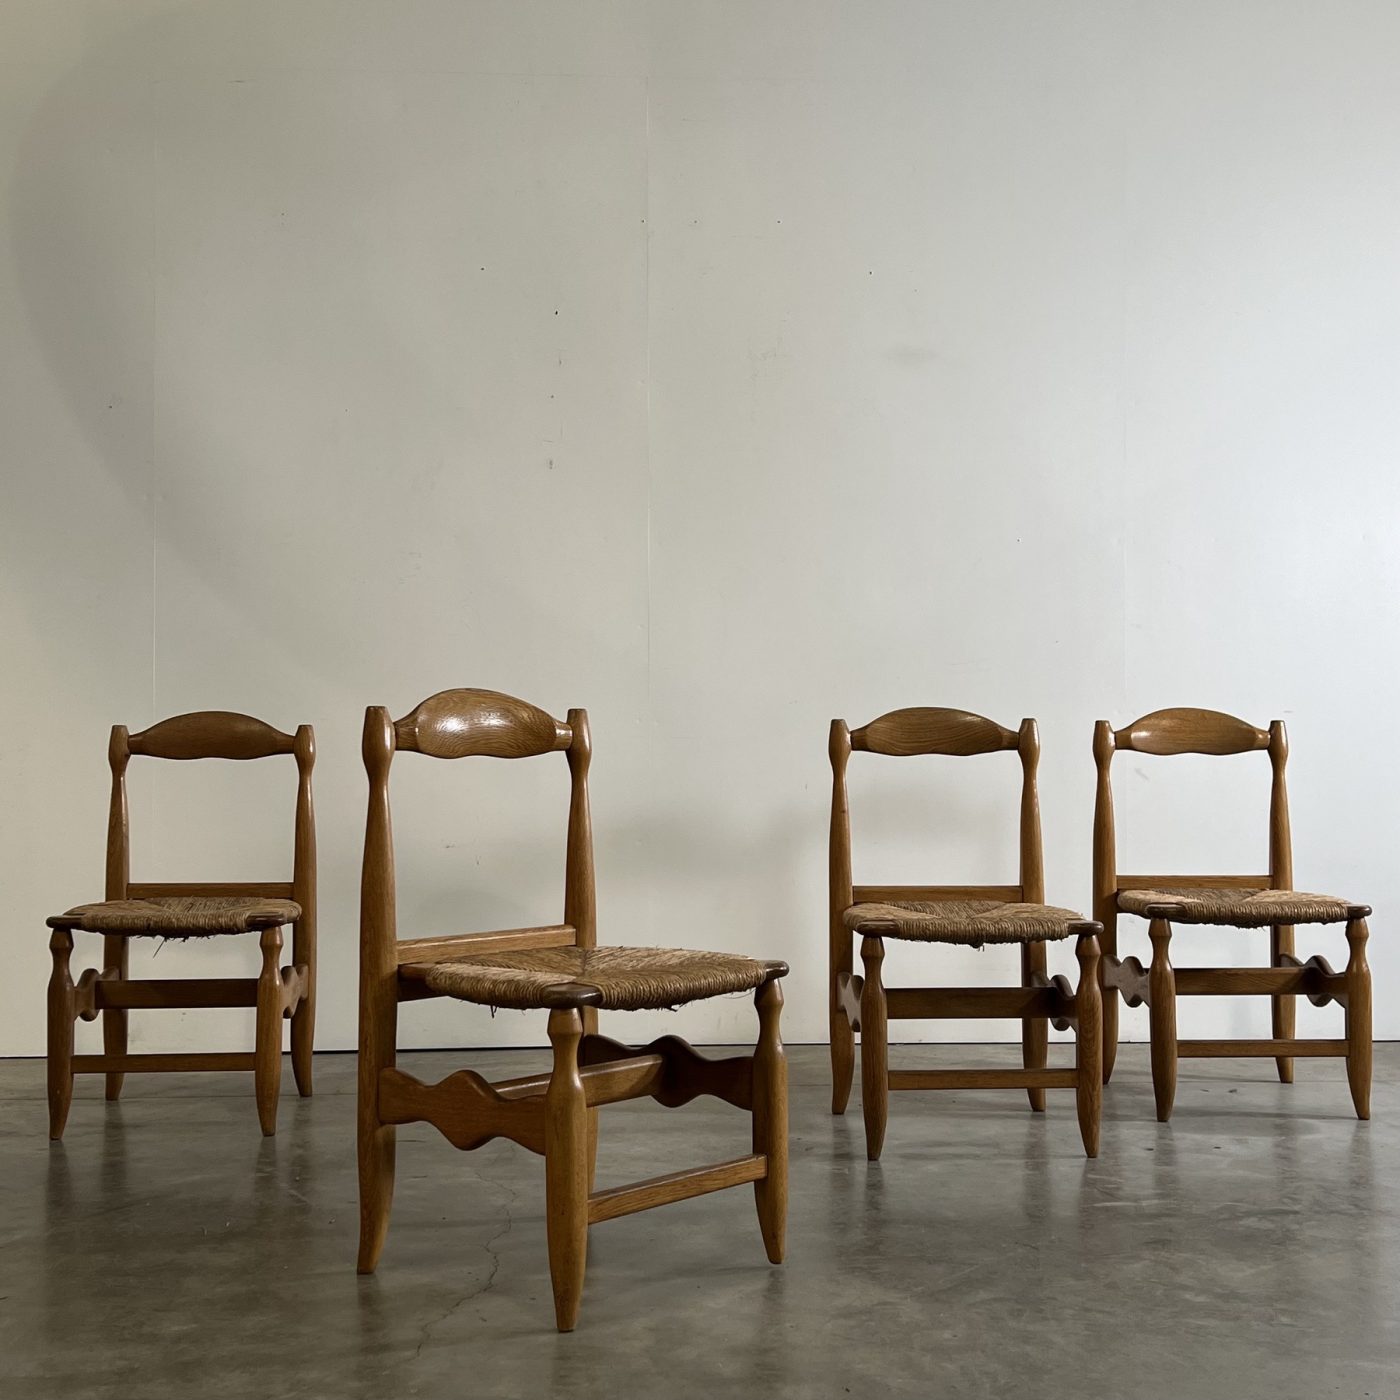 objet-vagabond-guillerme-chairs0007